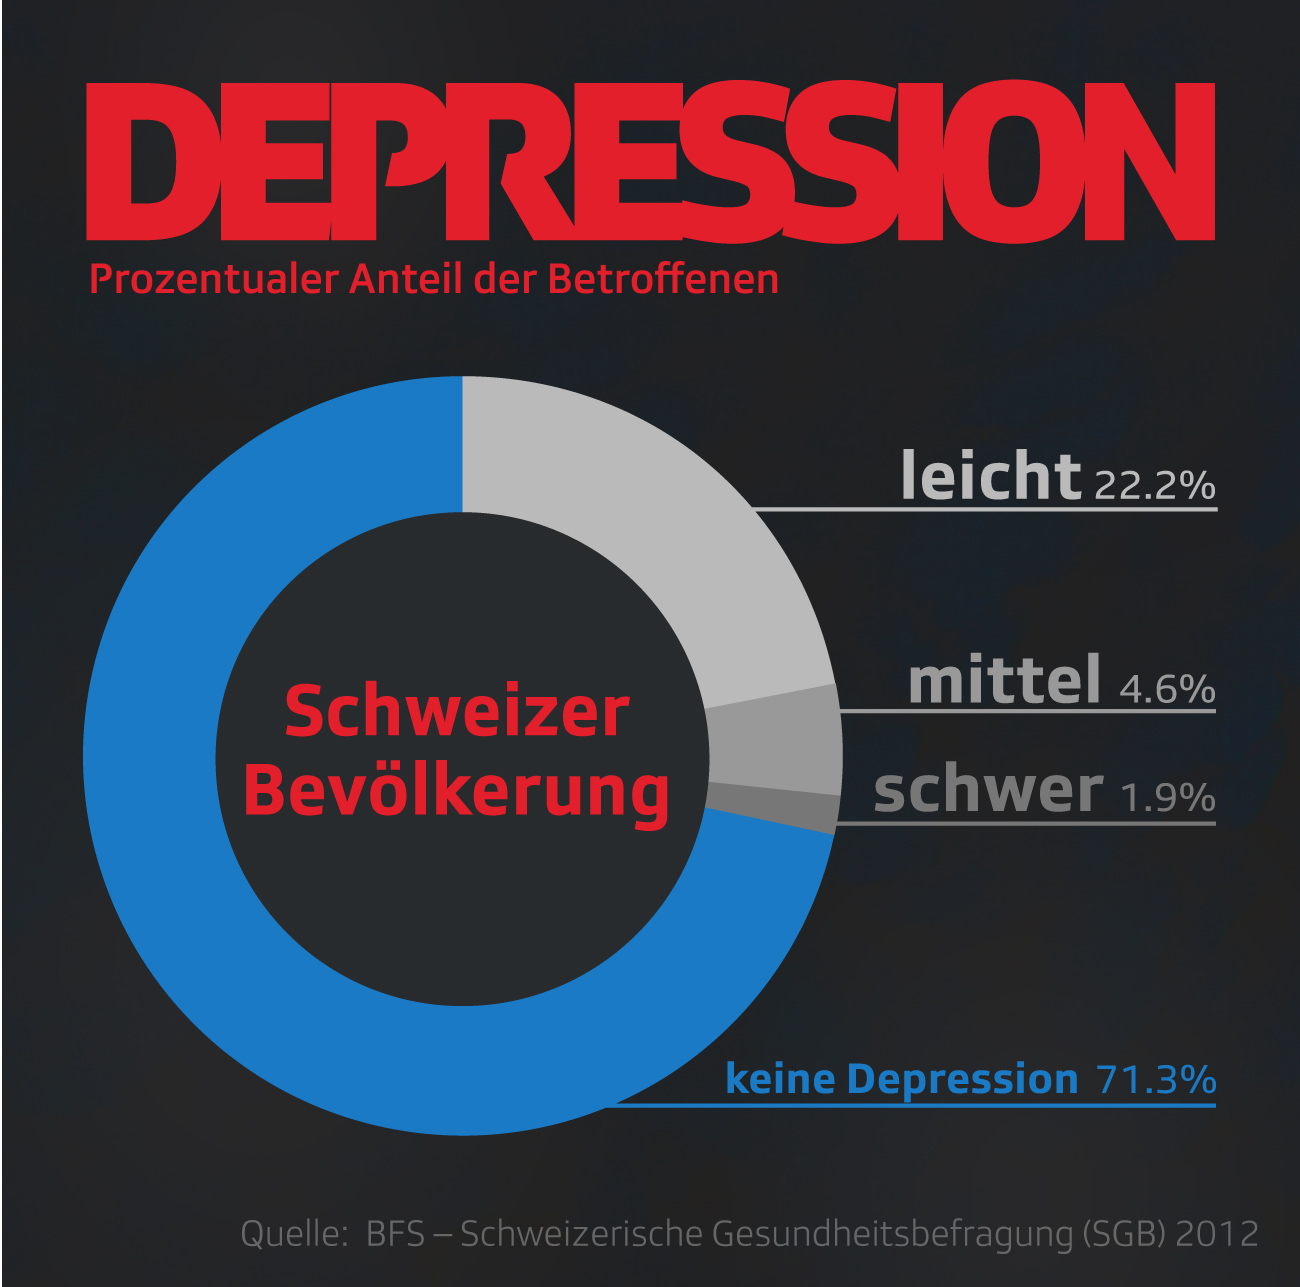 Anzahl der Depressiven in der Schweiz